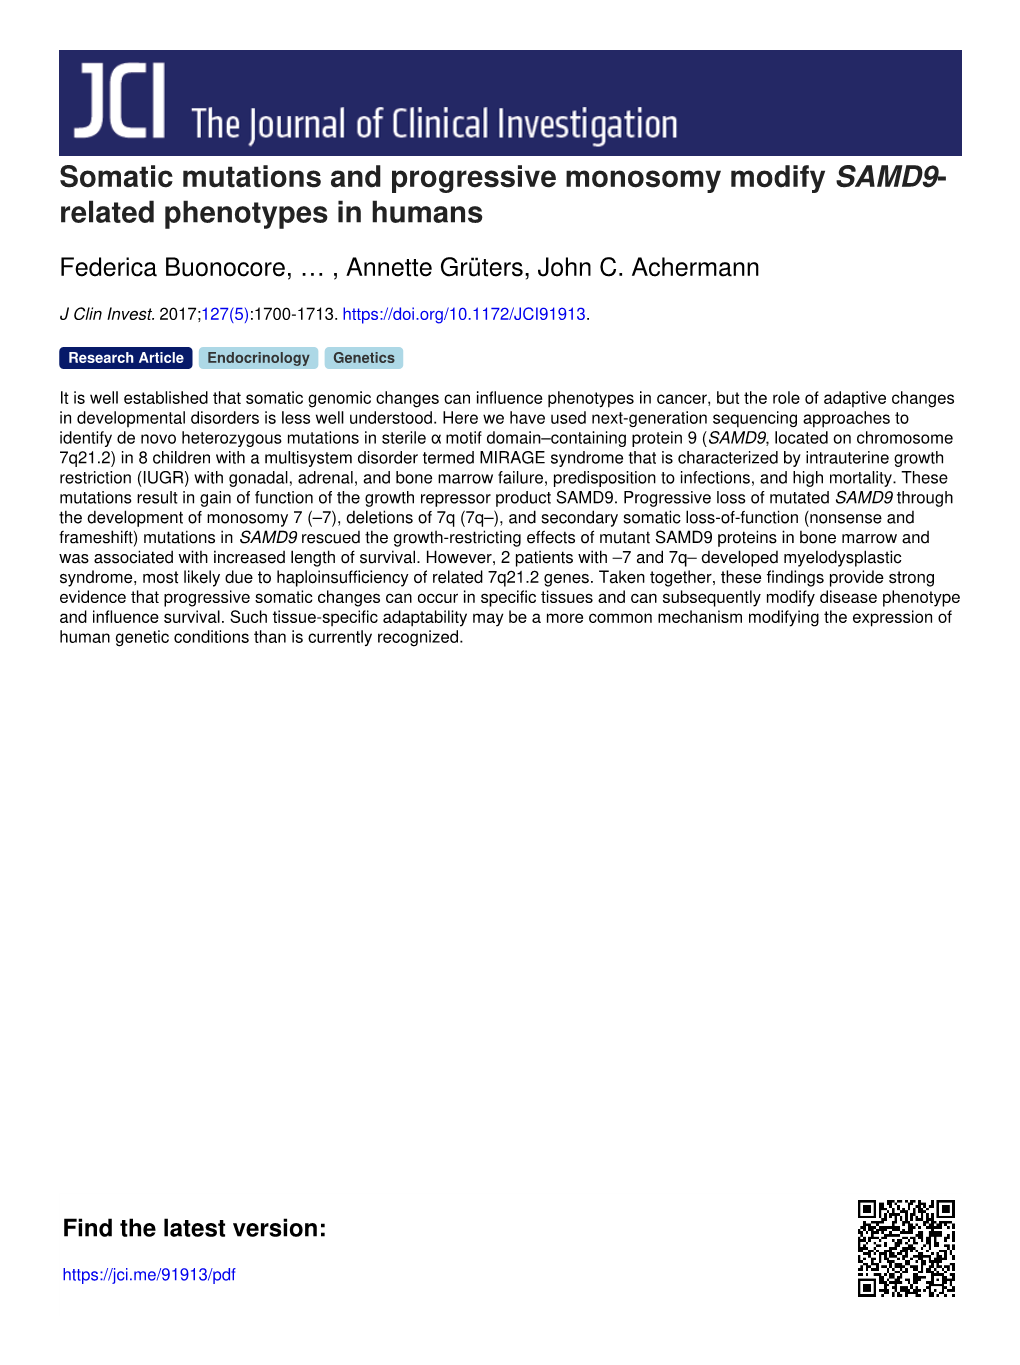 Somatic Mutations and Progressive Monosomy Modify SAMD9- Related Phenotypes in Humans